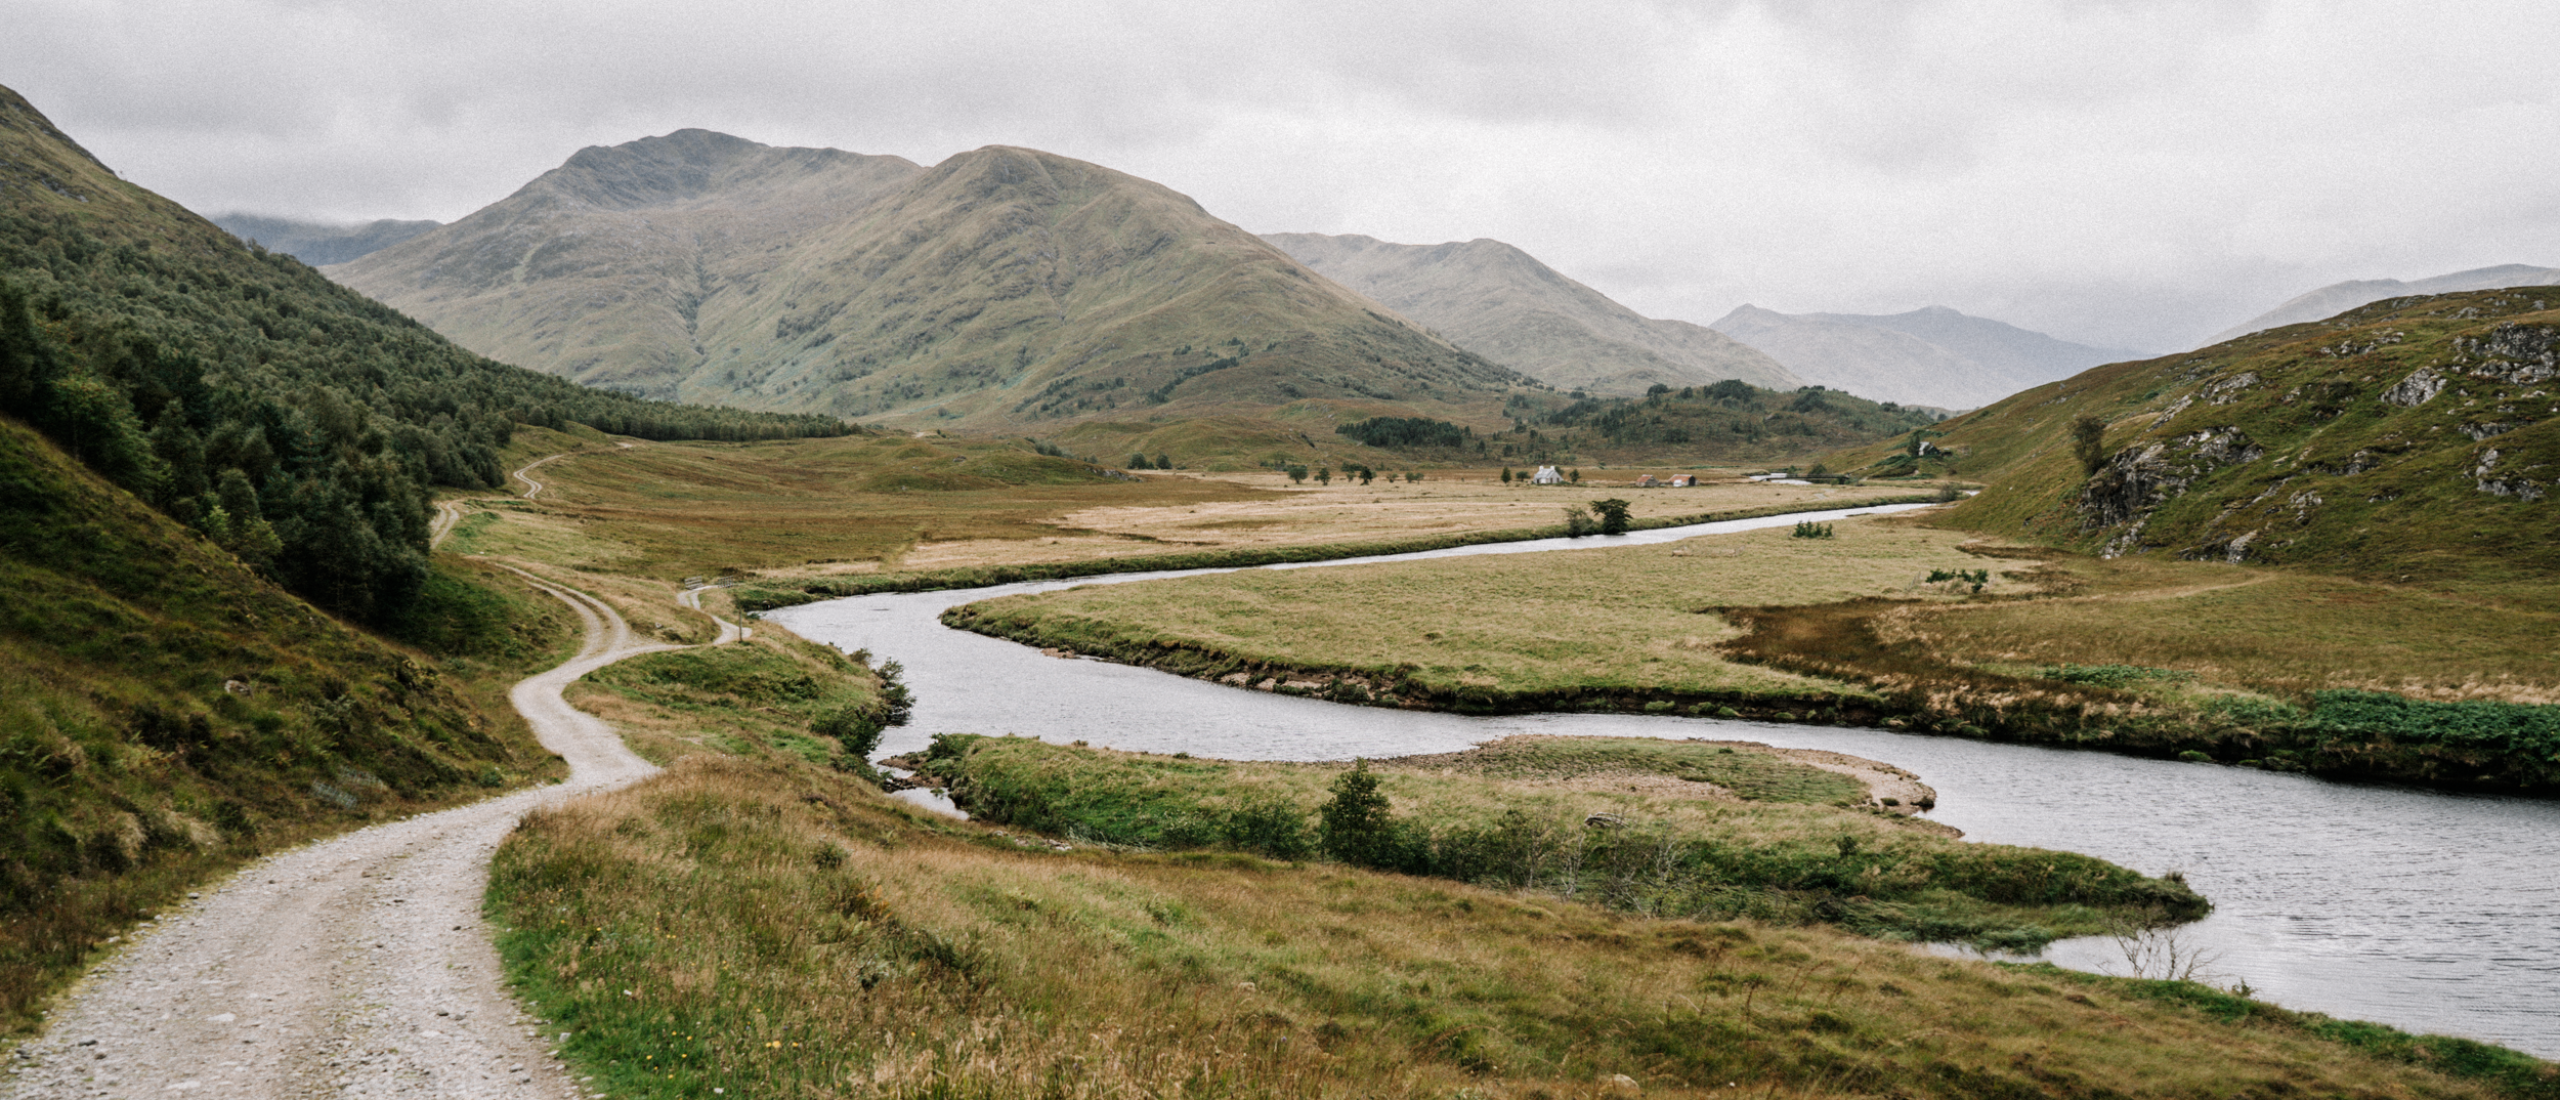 De Affric Kintail Way: door Schotlands mooist vallei